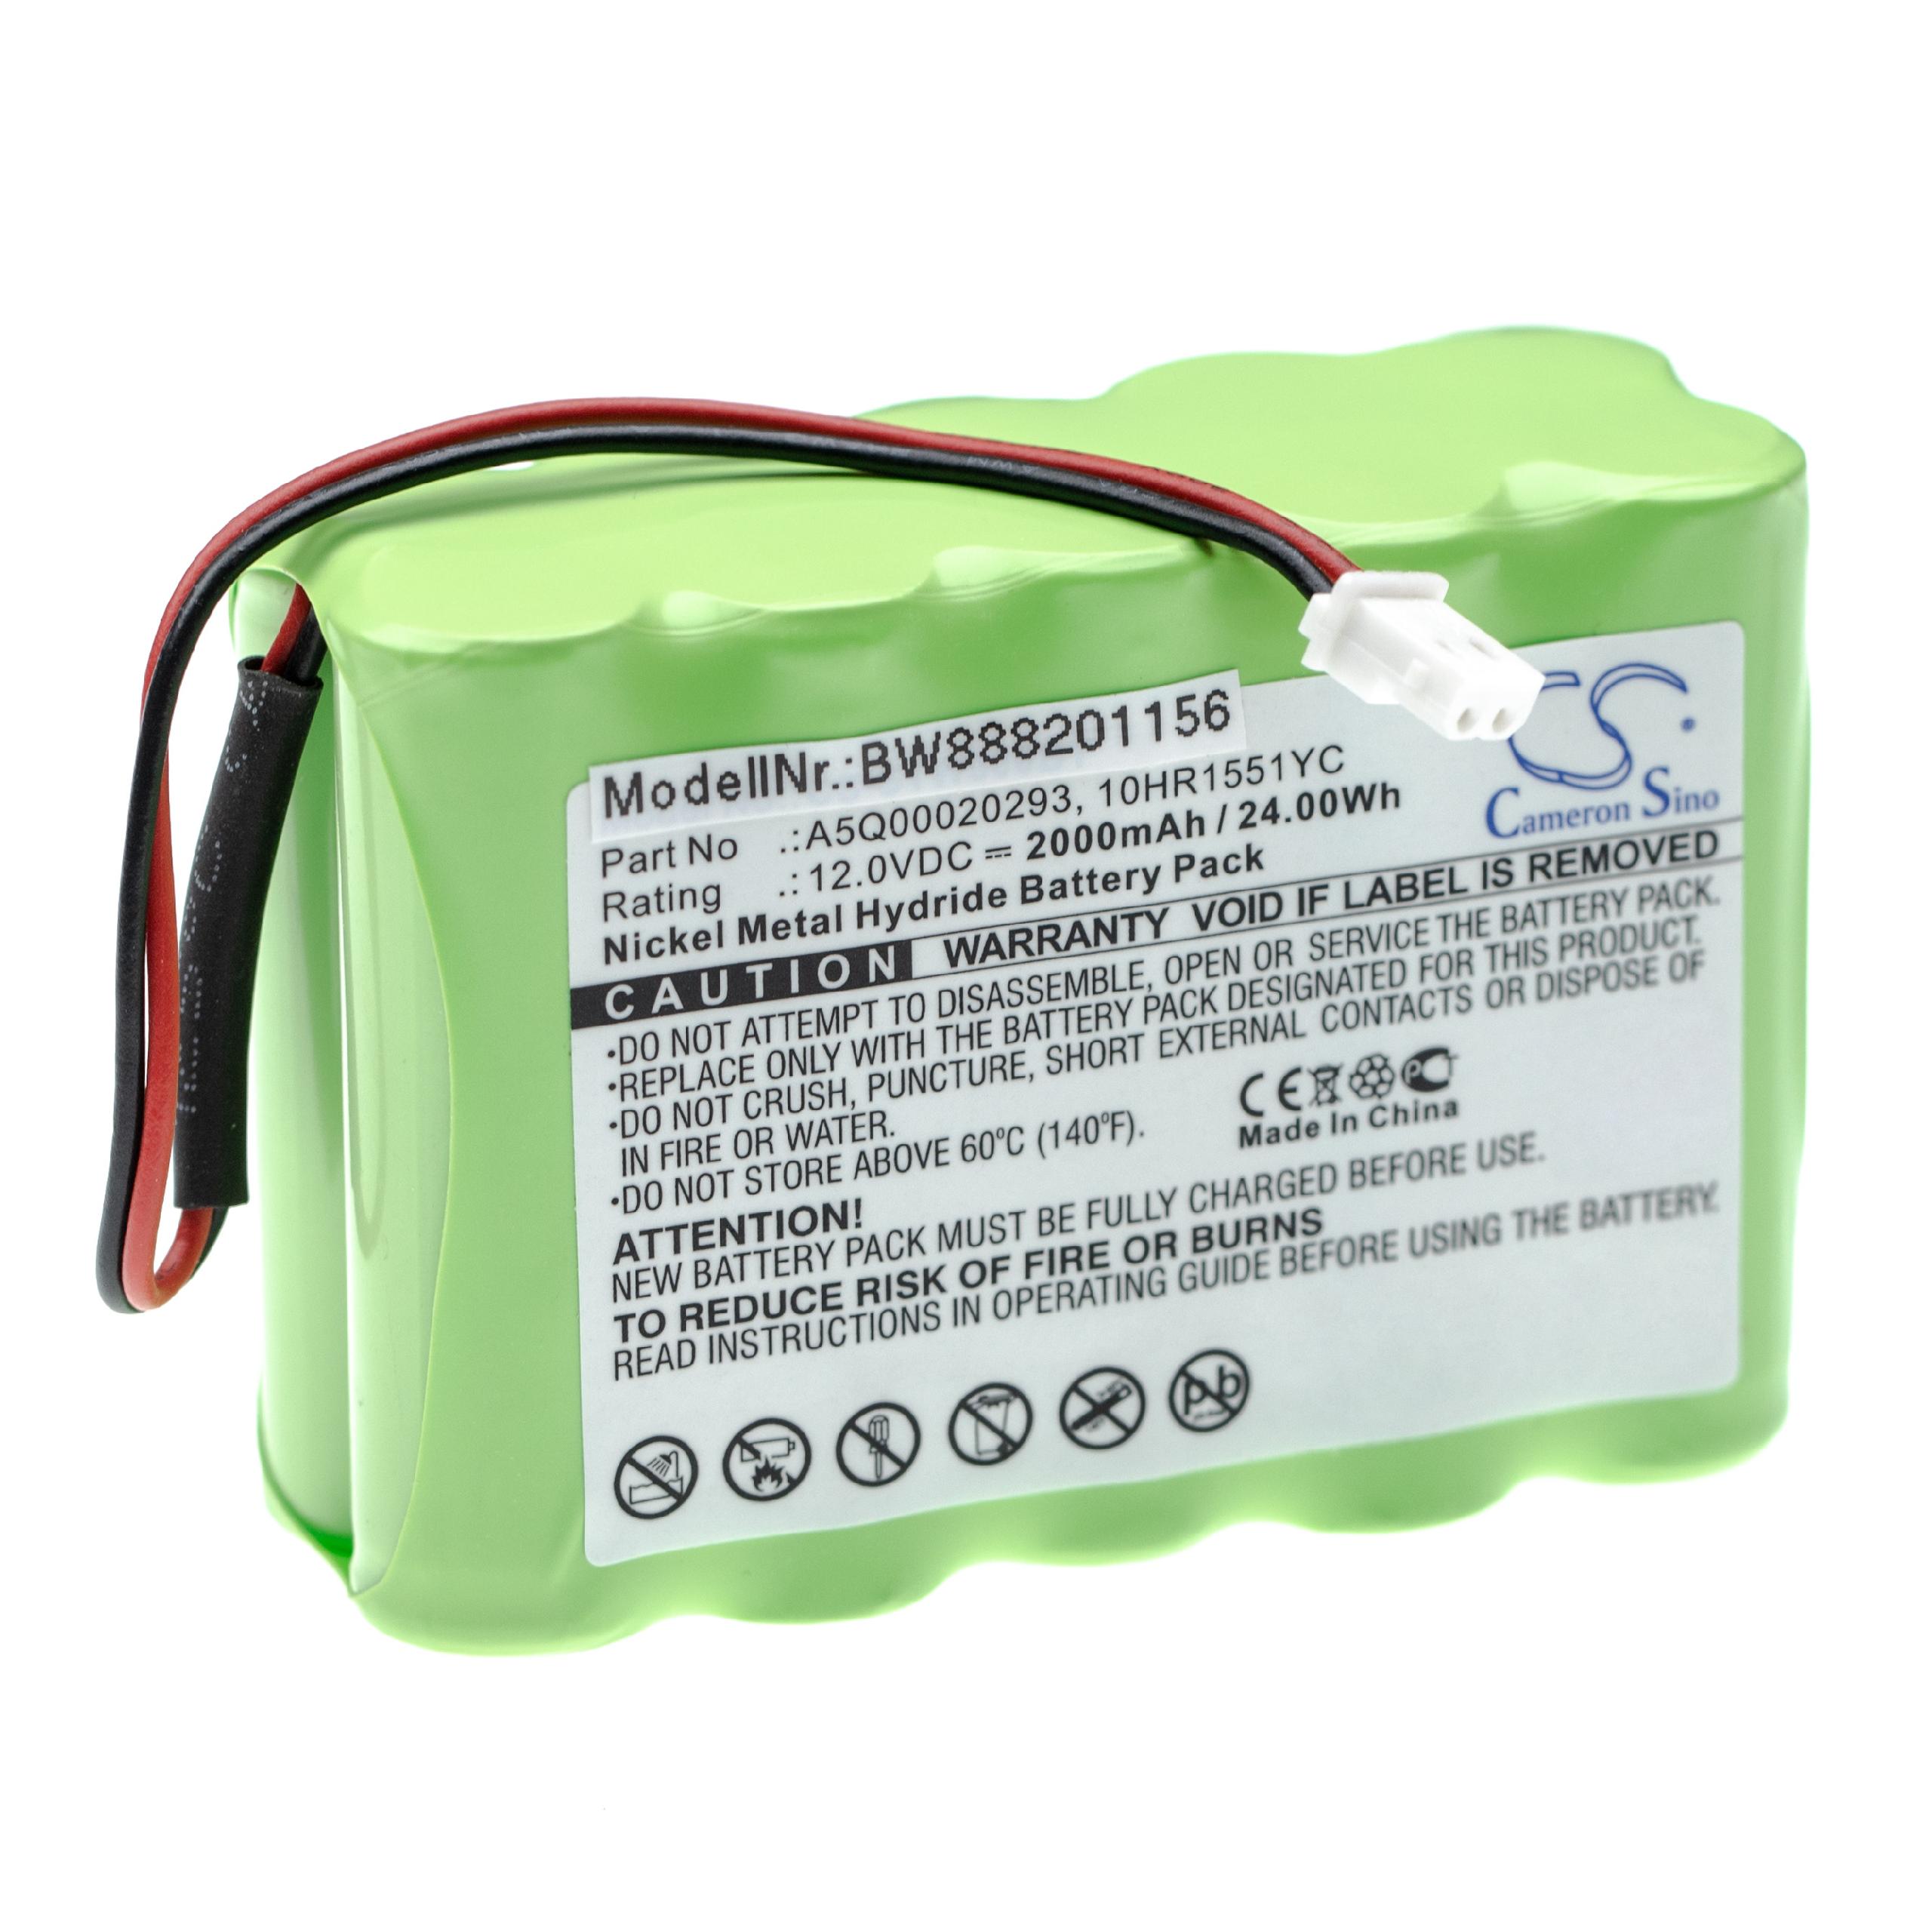 Batterie remplace Siemens A5Q00020293, IAB1201-8, 10HR1551YC pour centrale d'alarme - 2000mAh 12V NiMH